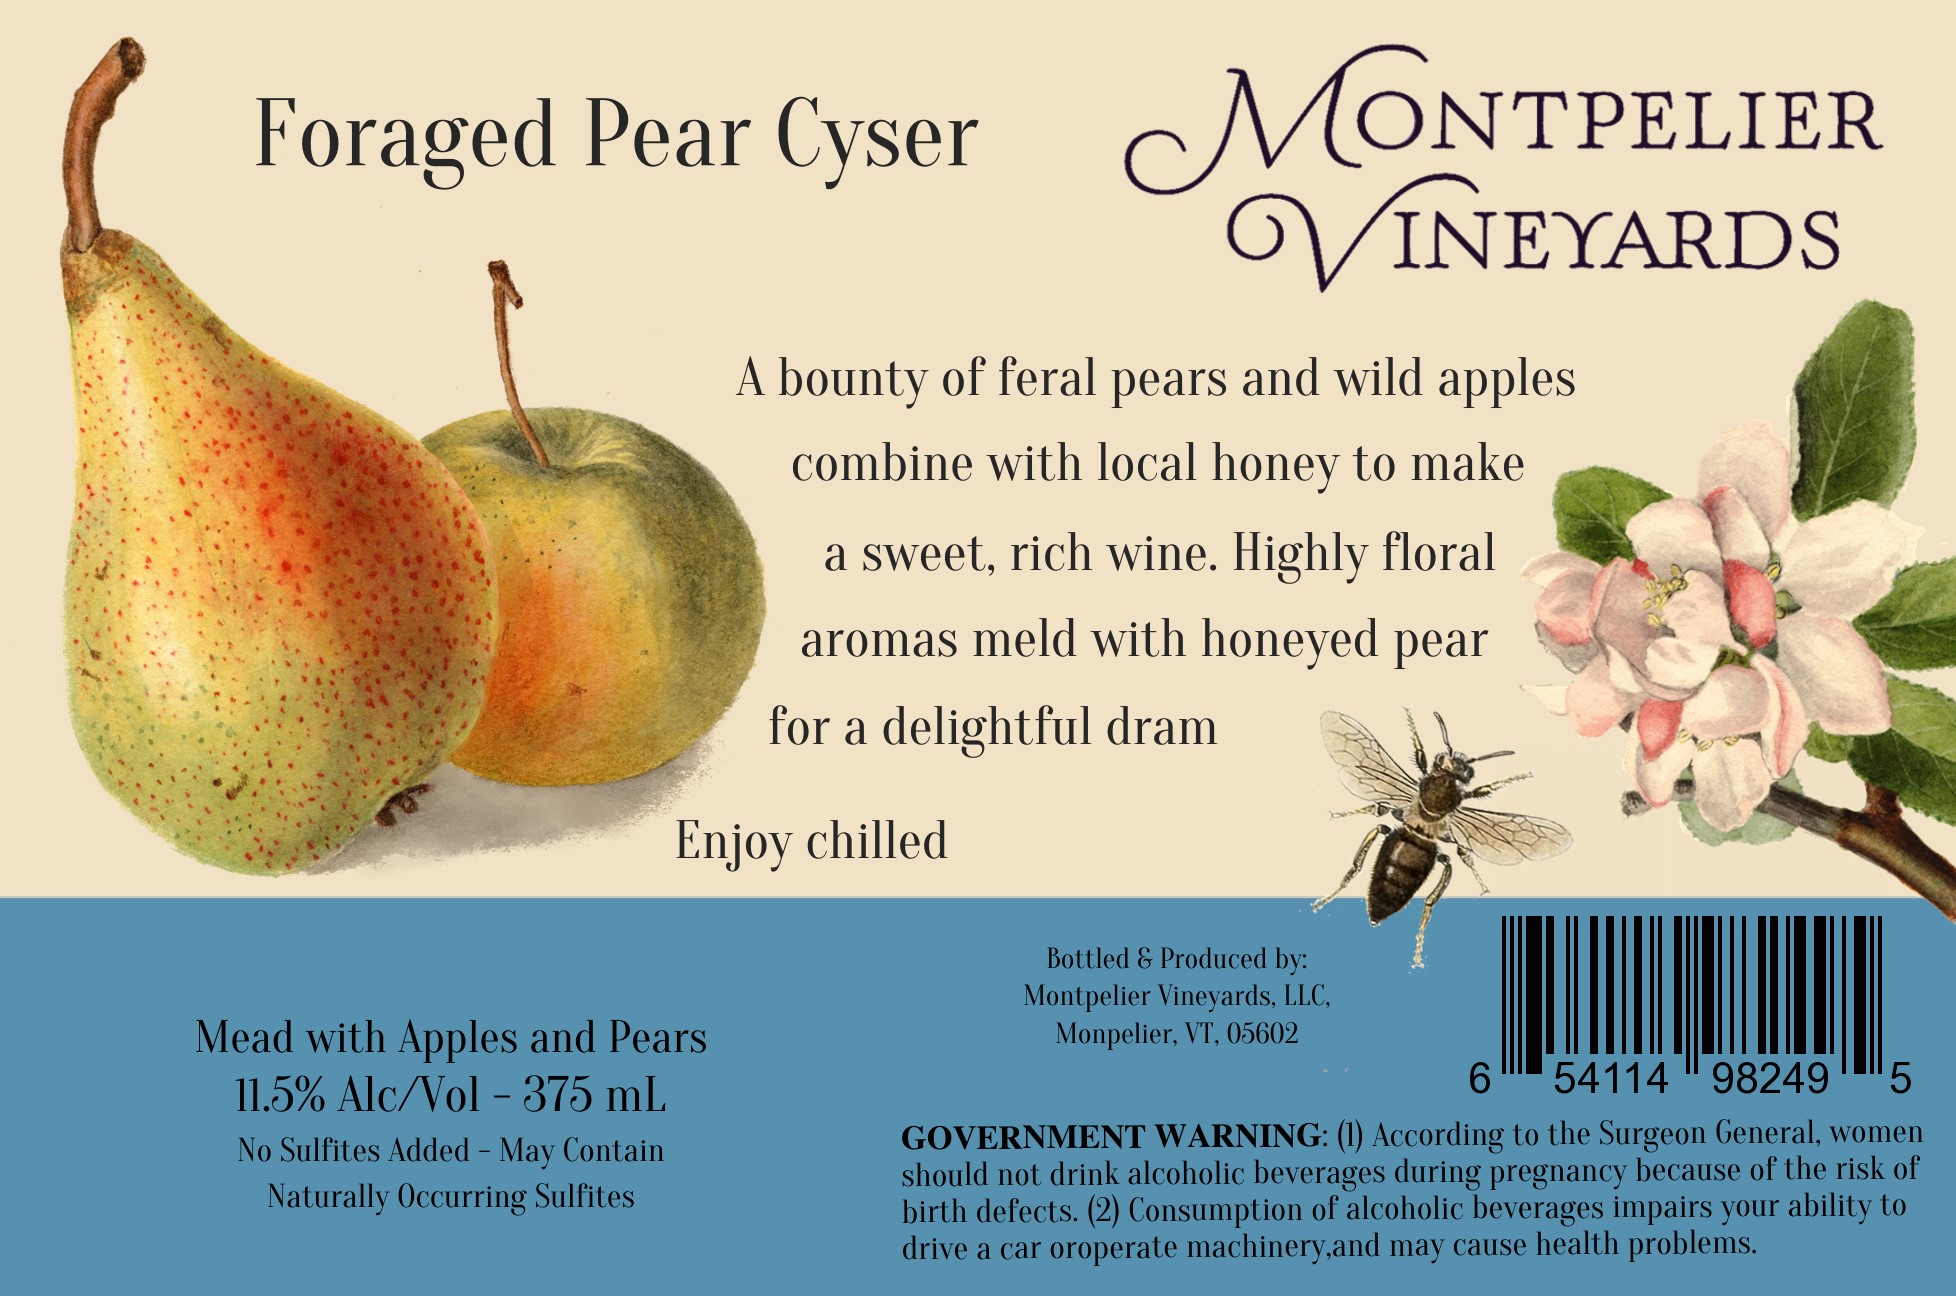 Foraged Pear Cyser 